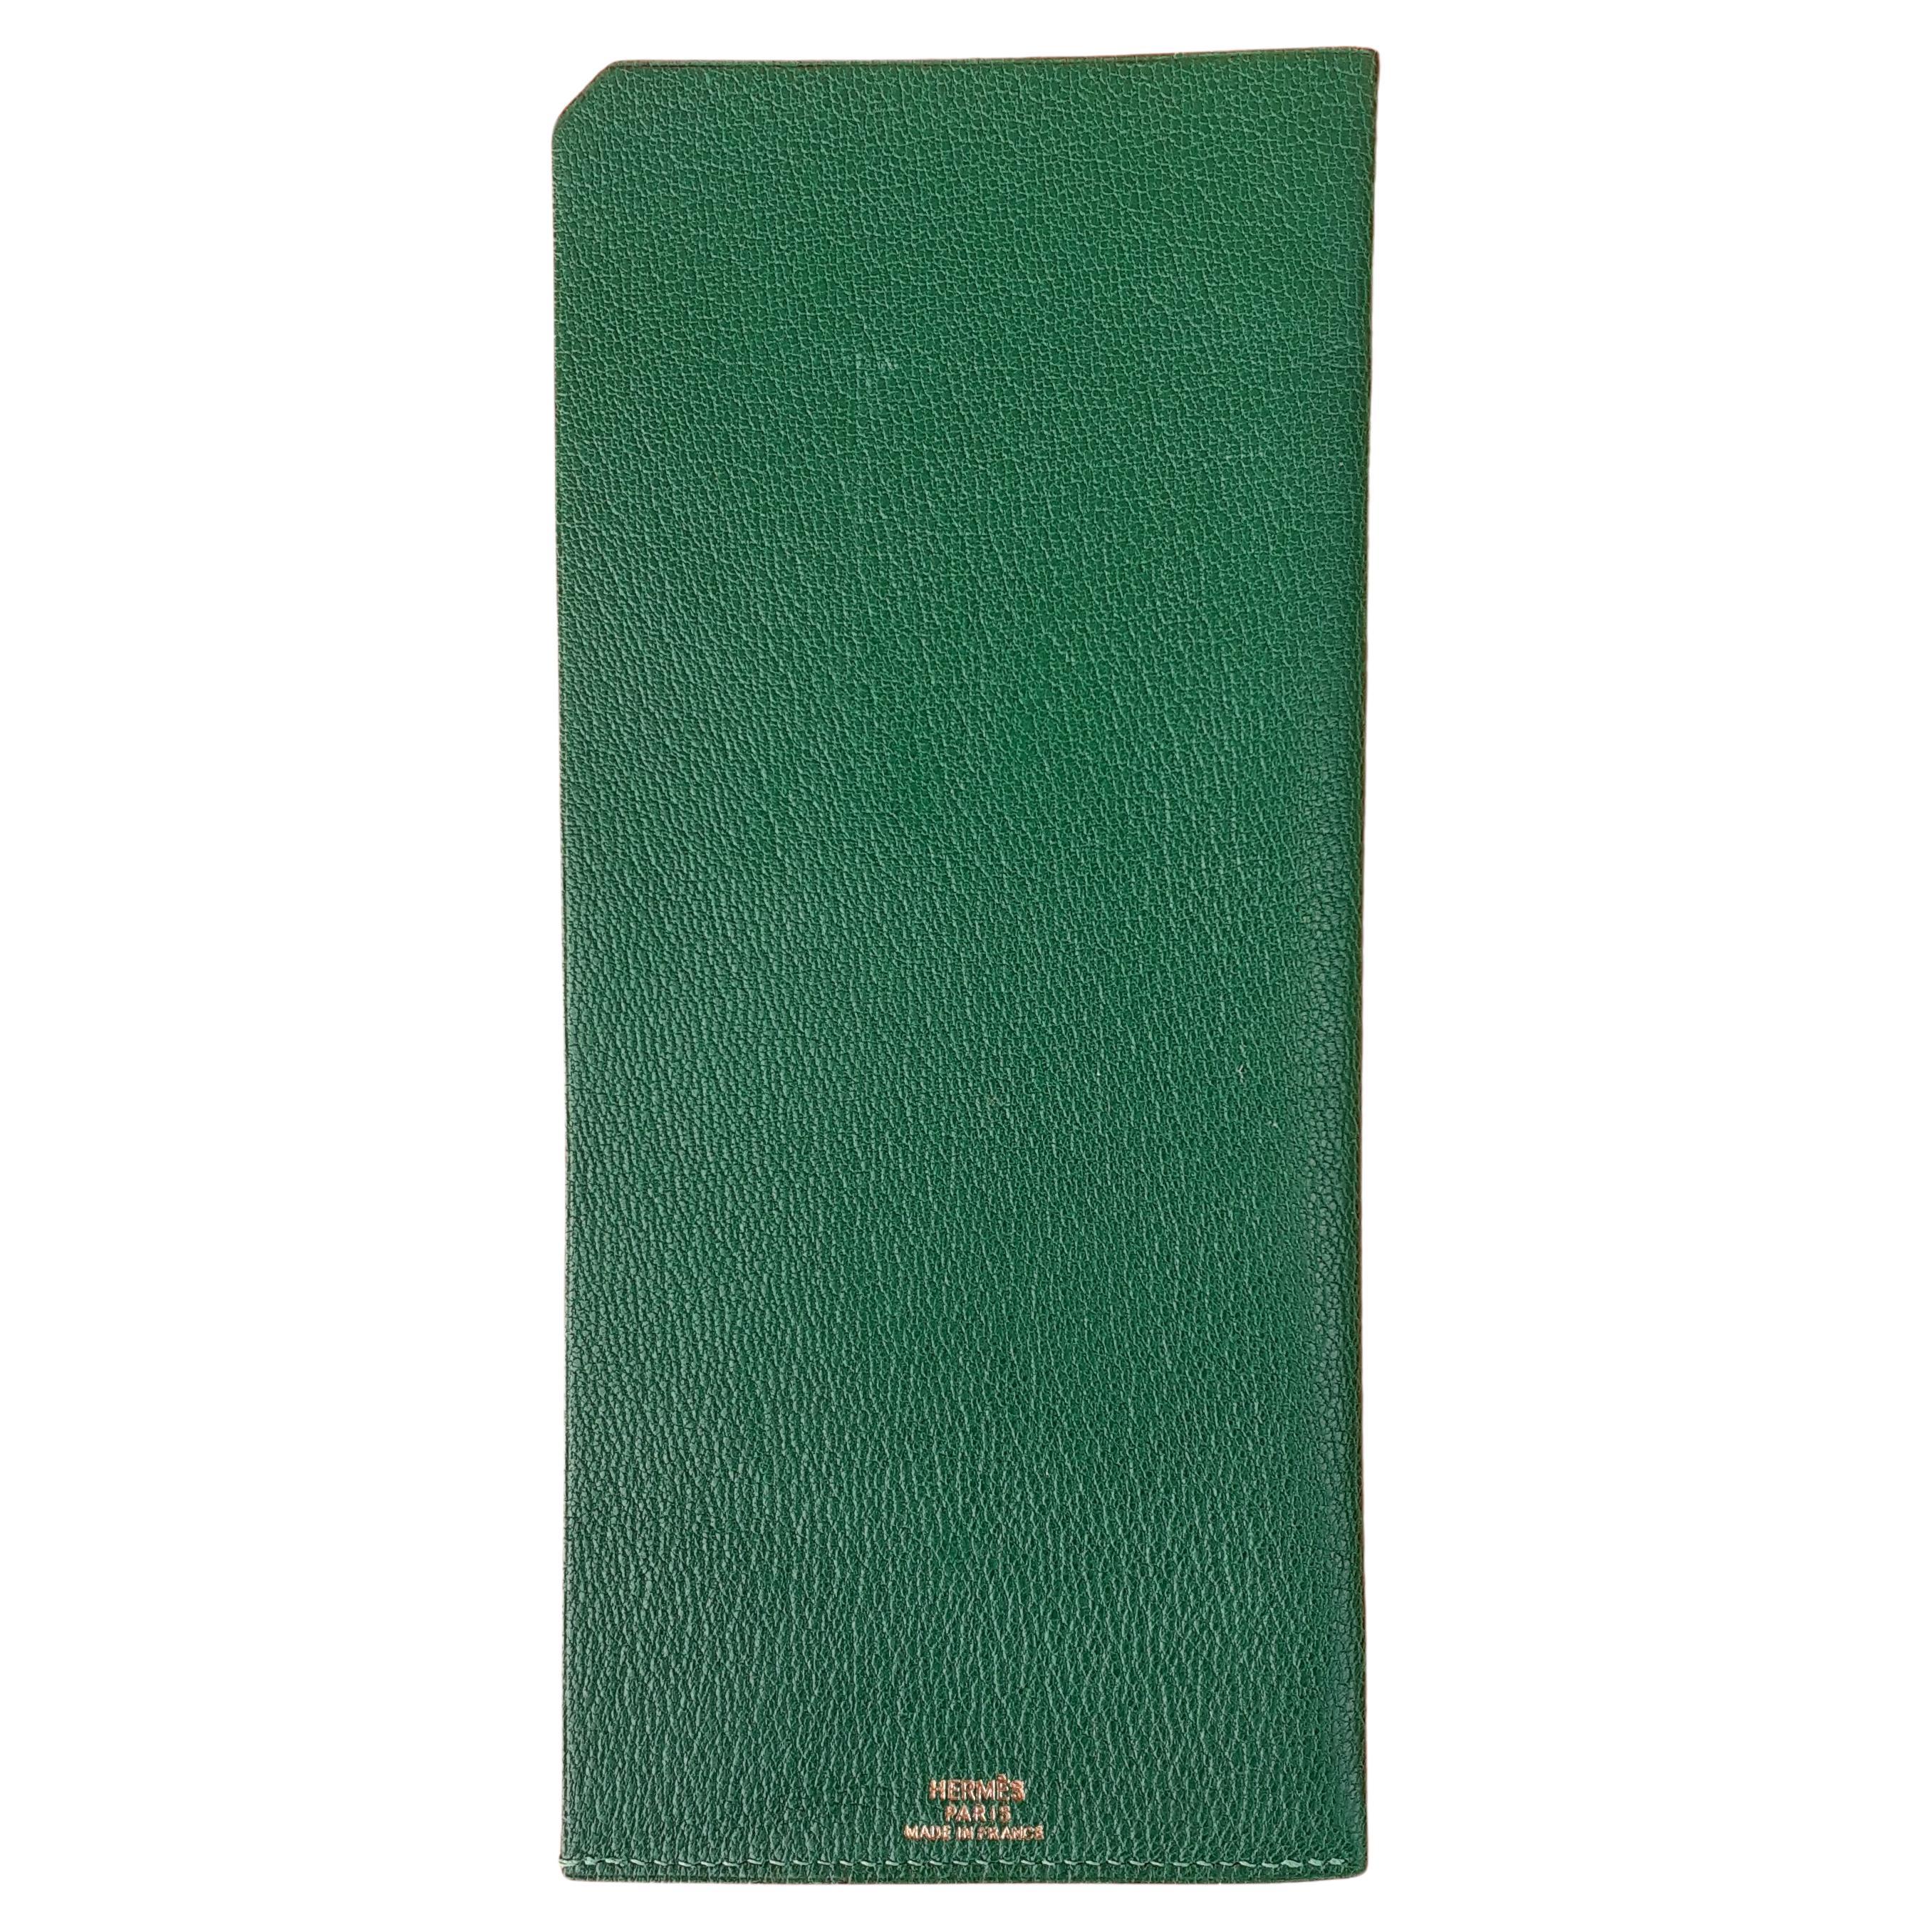 Hermès Bill Pocket aus grünem Leder